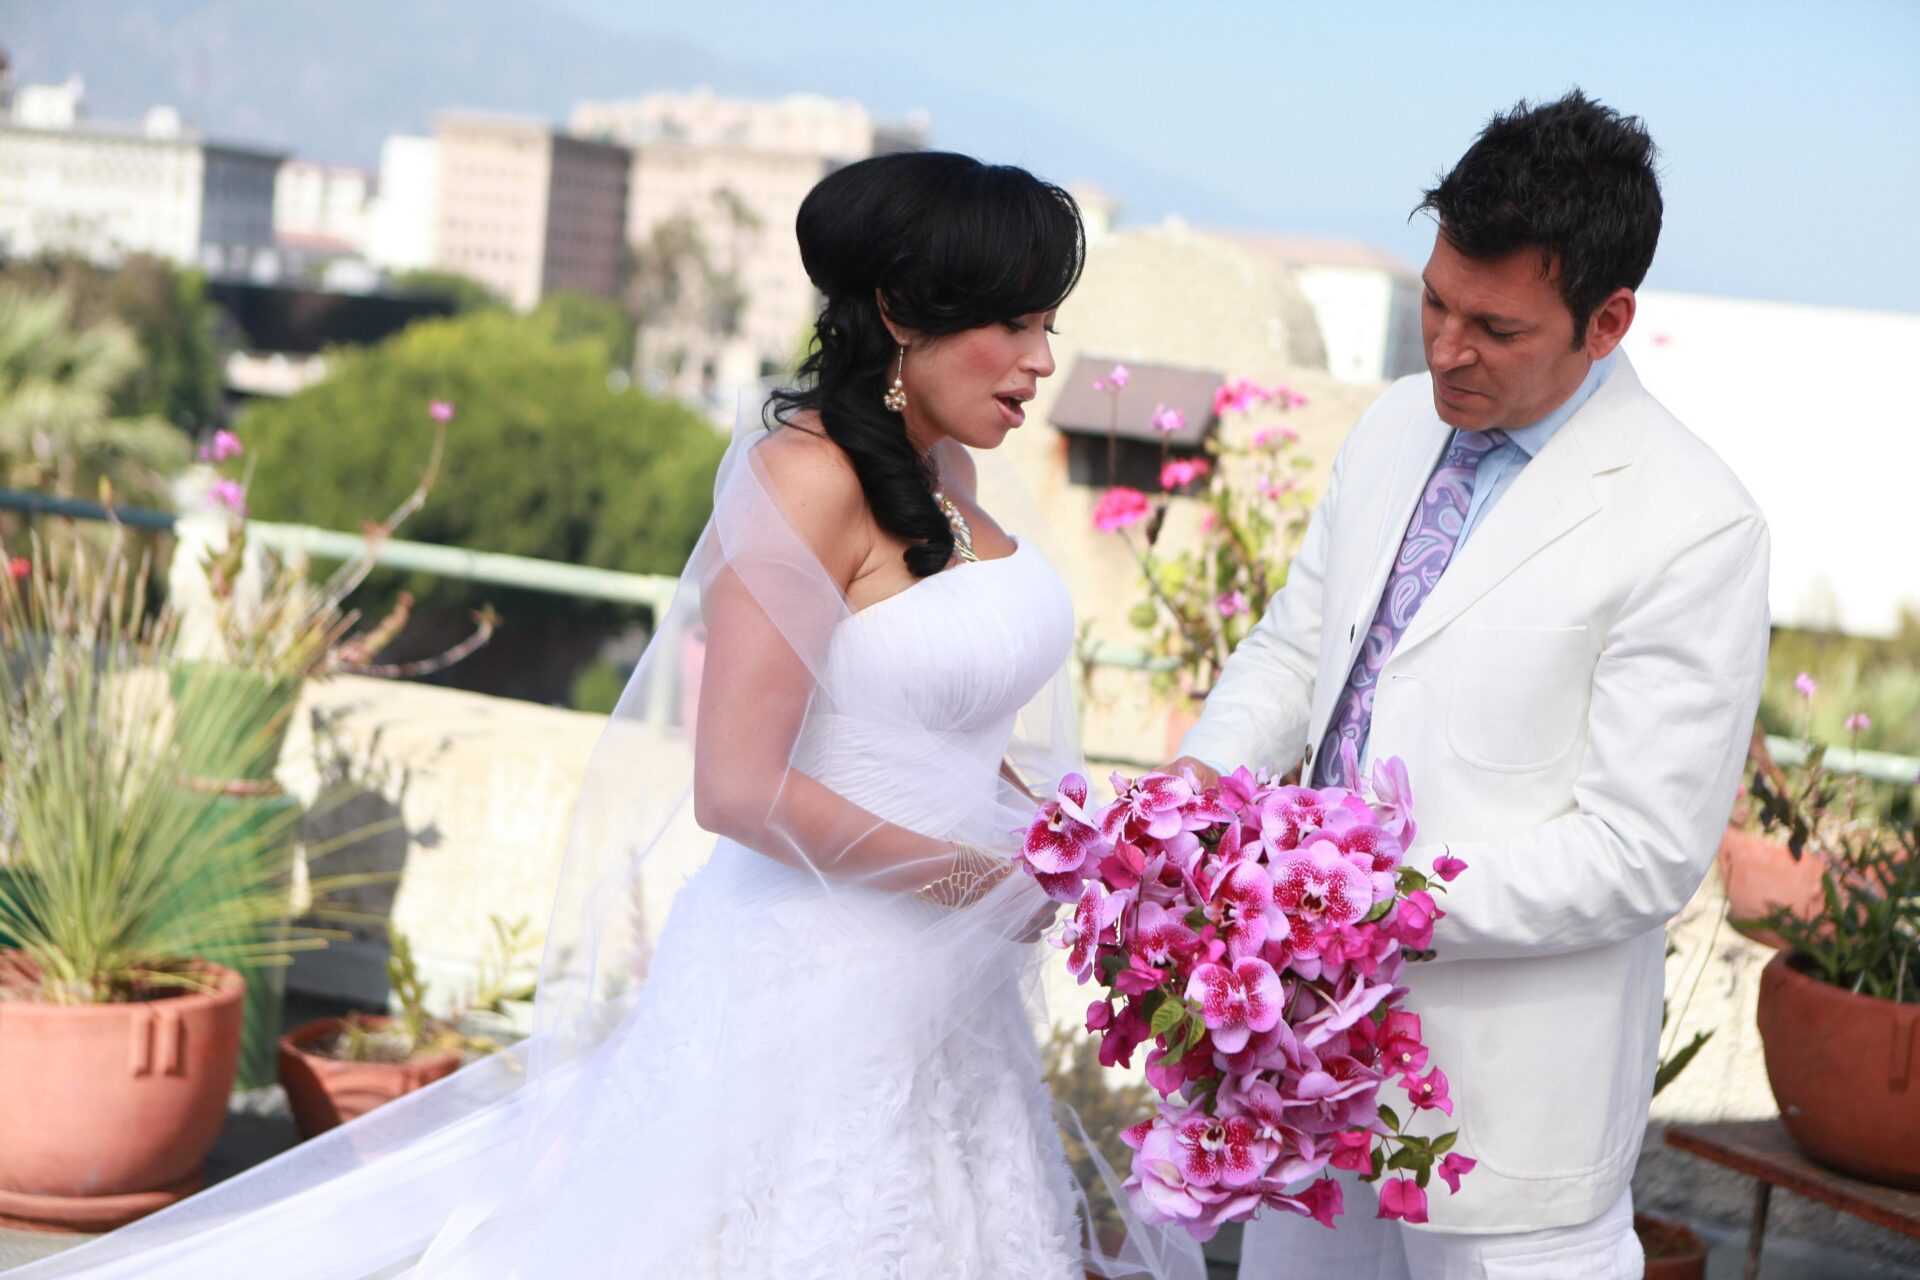 In esclusiva su LeiTv arriva "Matrimonio perfetto" | Digitale terrestre: Dtti.it